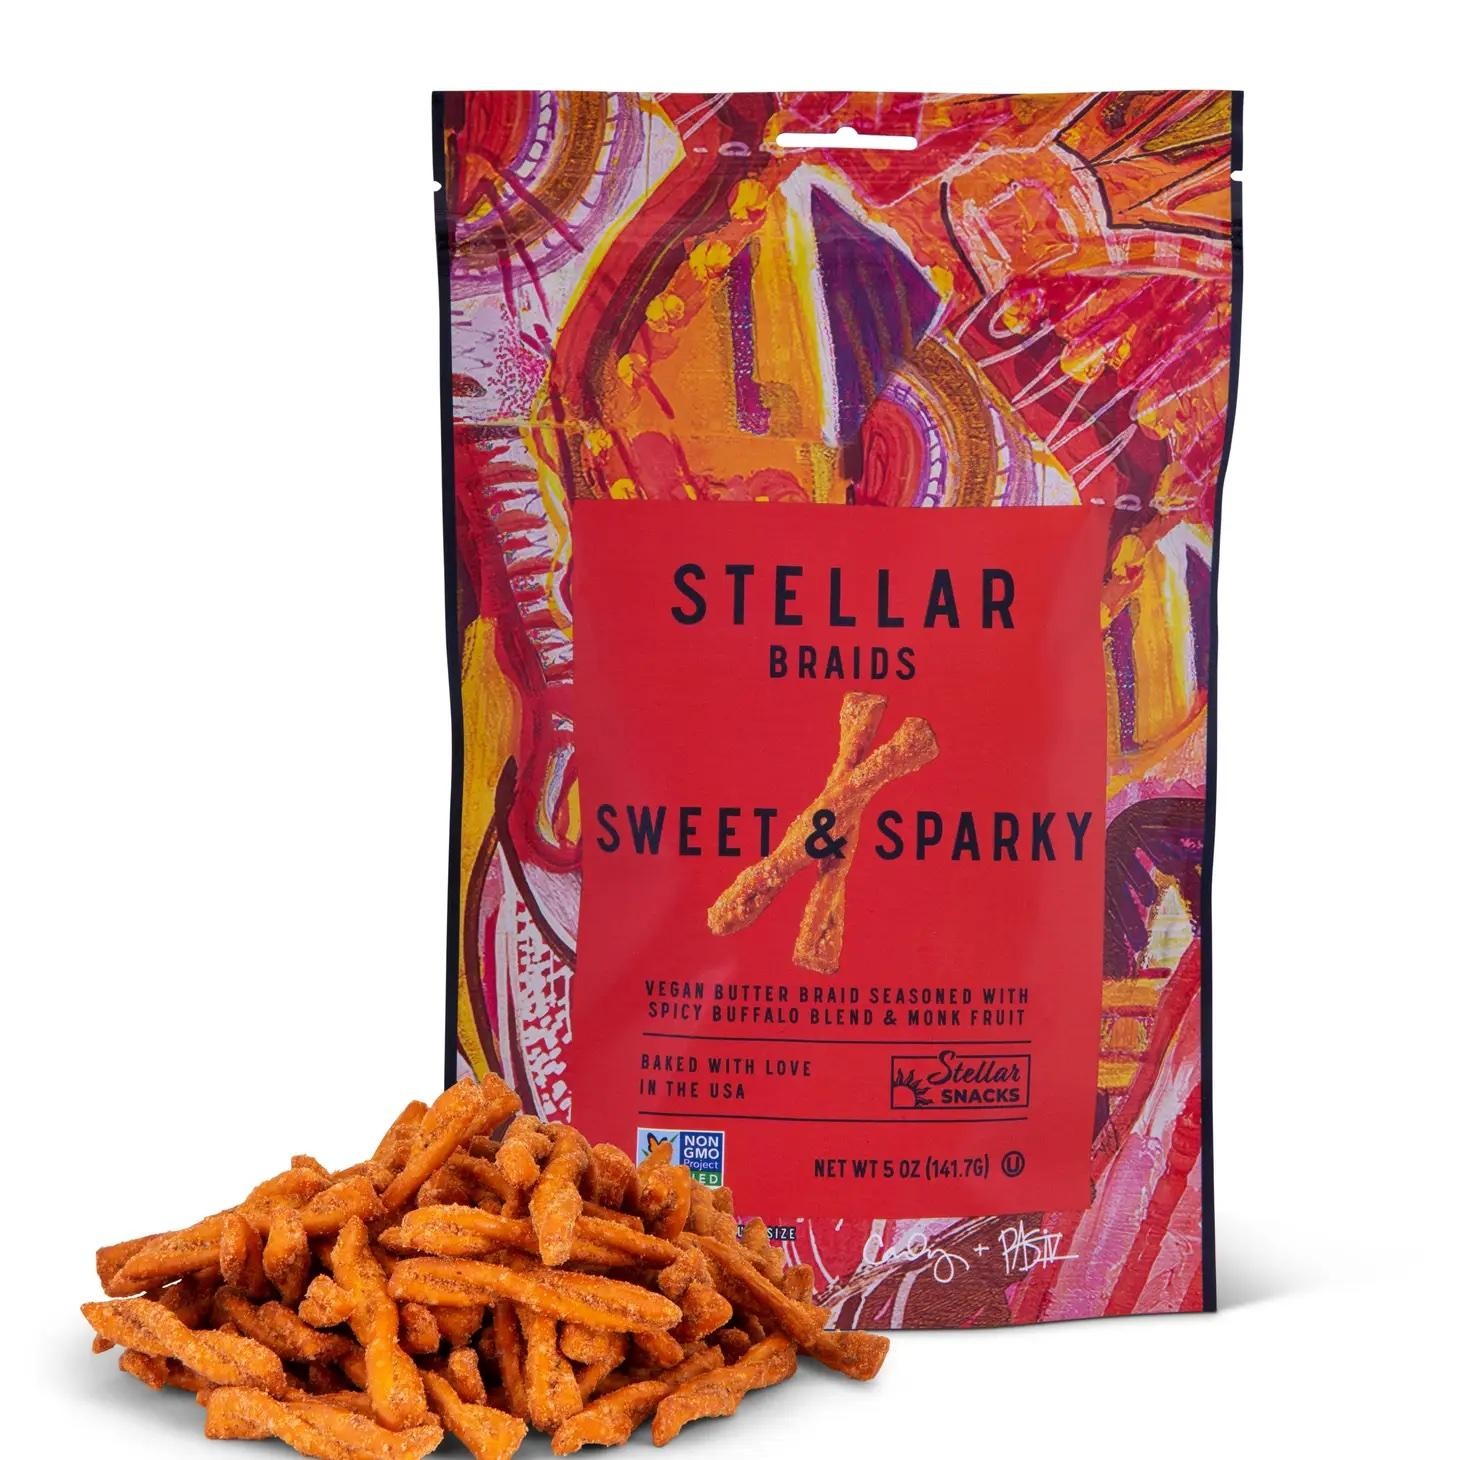 STE Stellar braids sweet & sparky